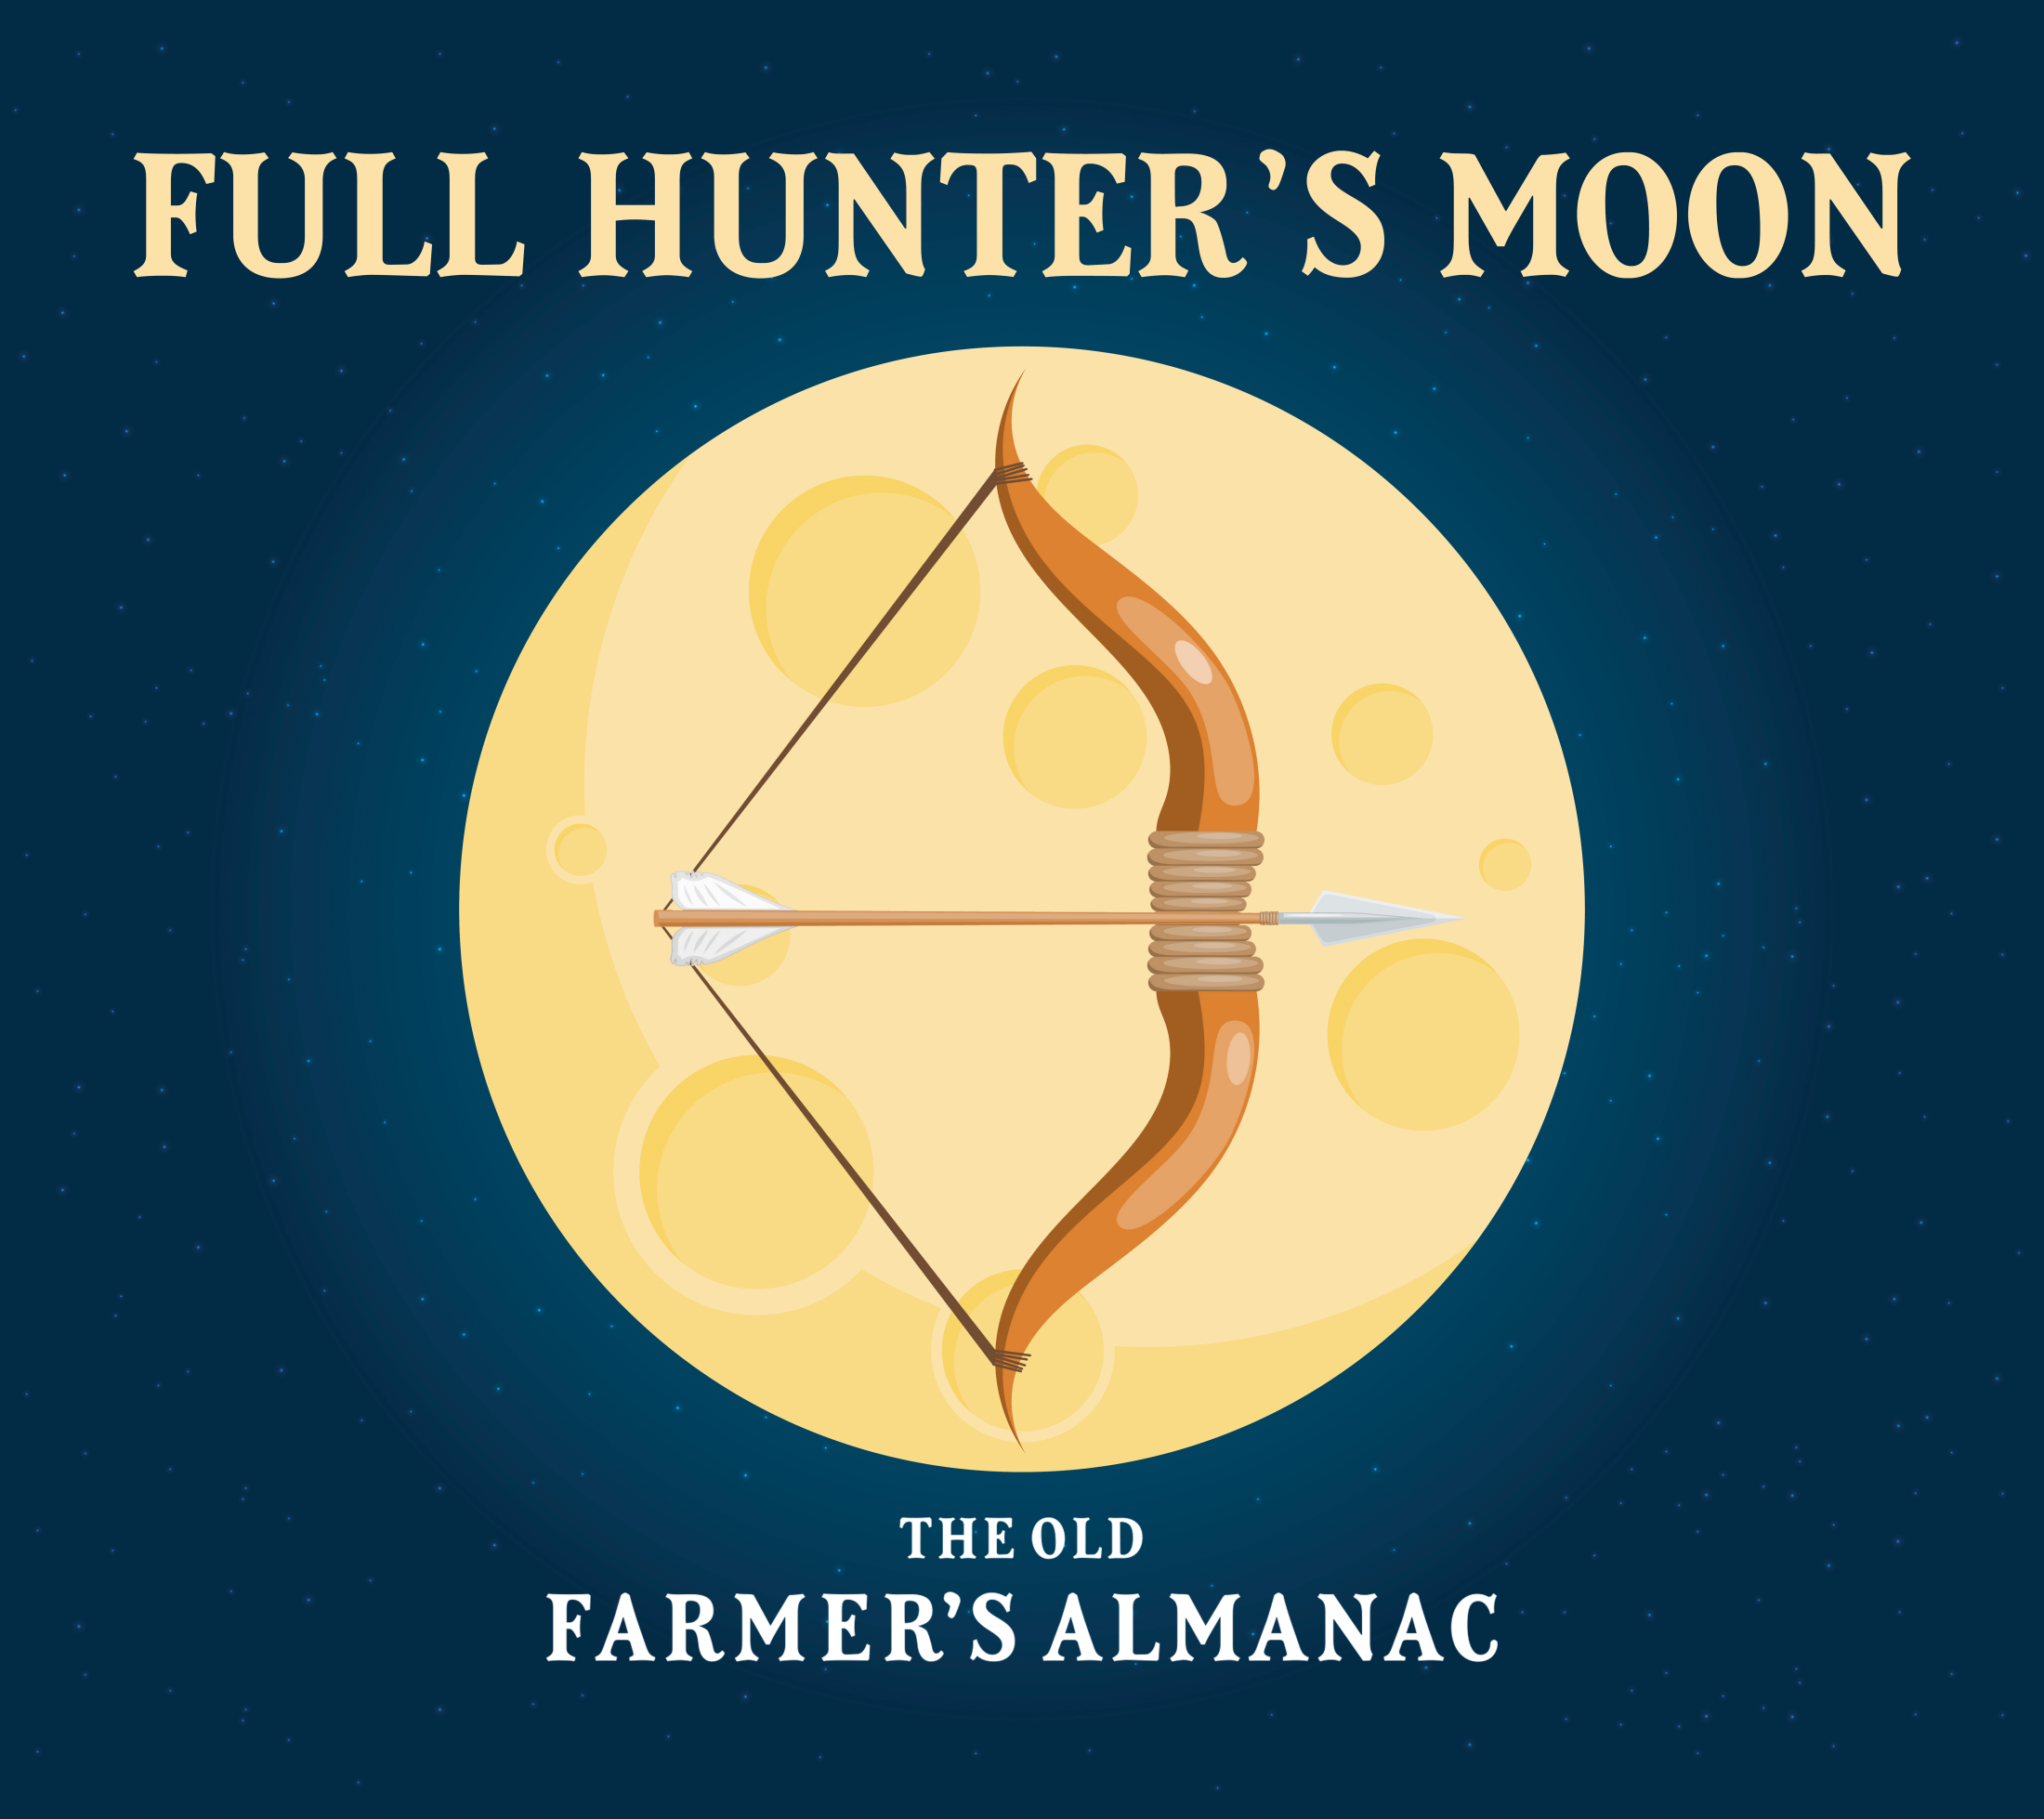 The Full Hunter's Moon Full Moon for October 2019 The Old Farmer's